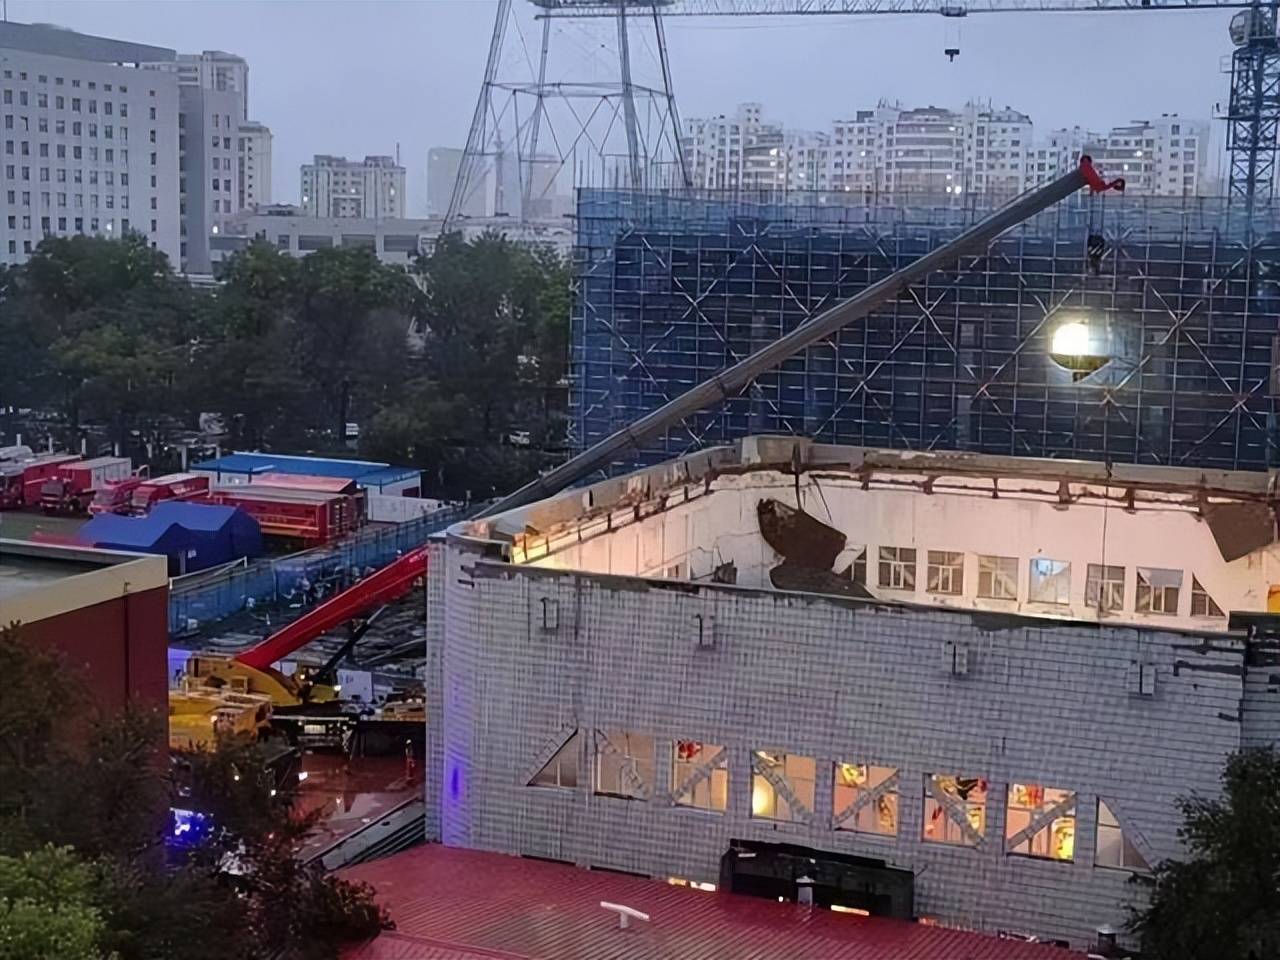 齐齐哈尔体育馆坍塌共11人遇难 有家属质称没人给沟通疑救援流程